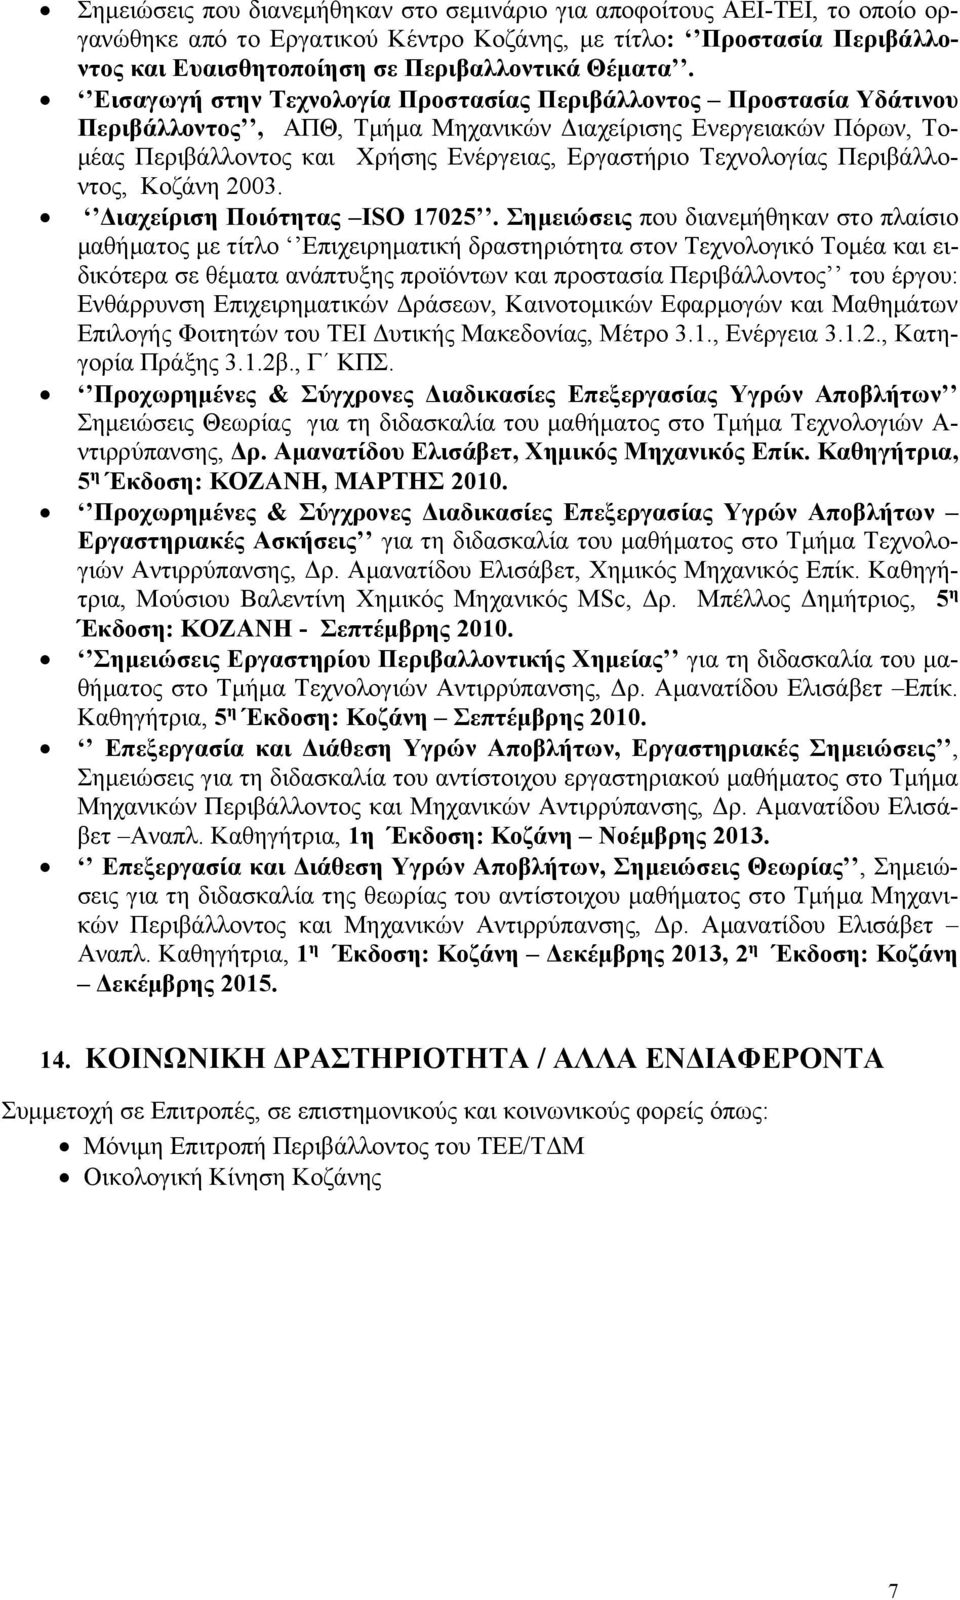 Τεχνολογίας Περιβάλλοντος, Κοζάνη 2003. Διαχείριση Ποιότητας ISO 17025.